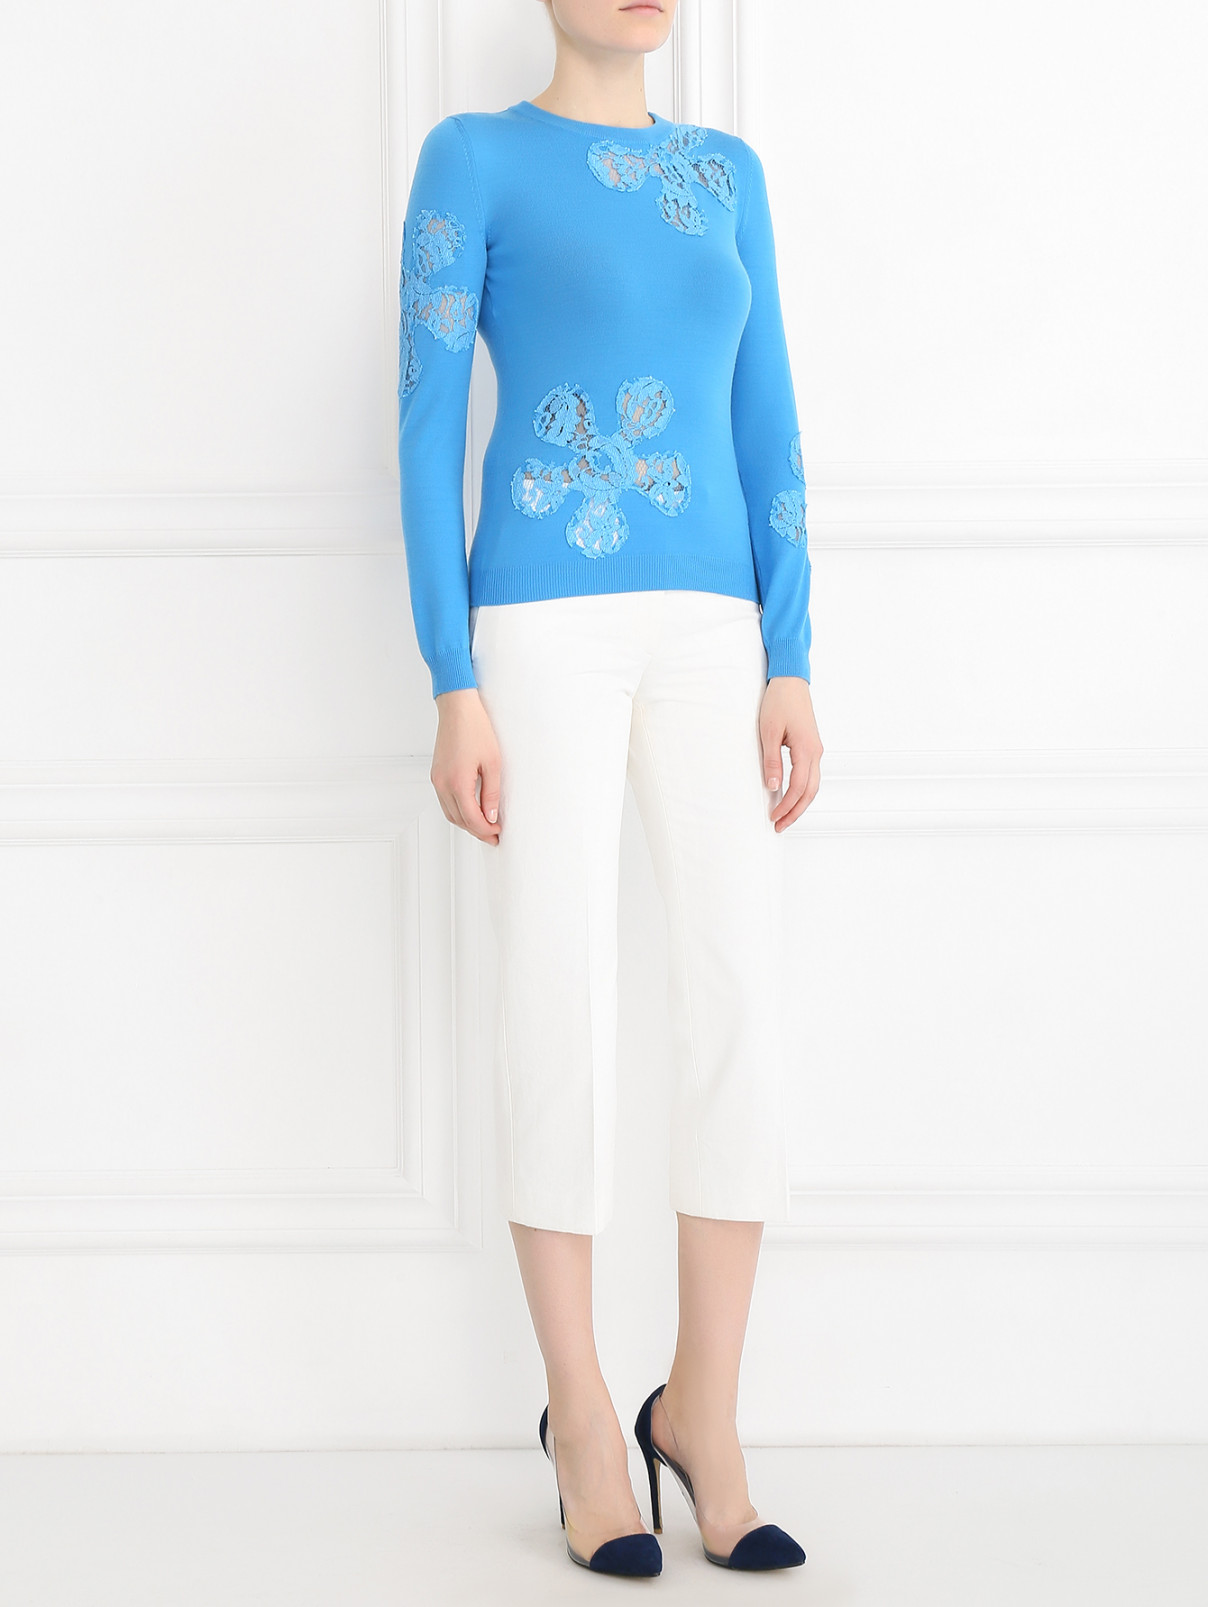 Джемпер из шерсти с кружевными вставками Moschino Couture  –  Модель Общий вид  – Цвет:  Синий